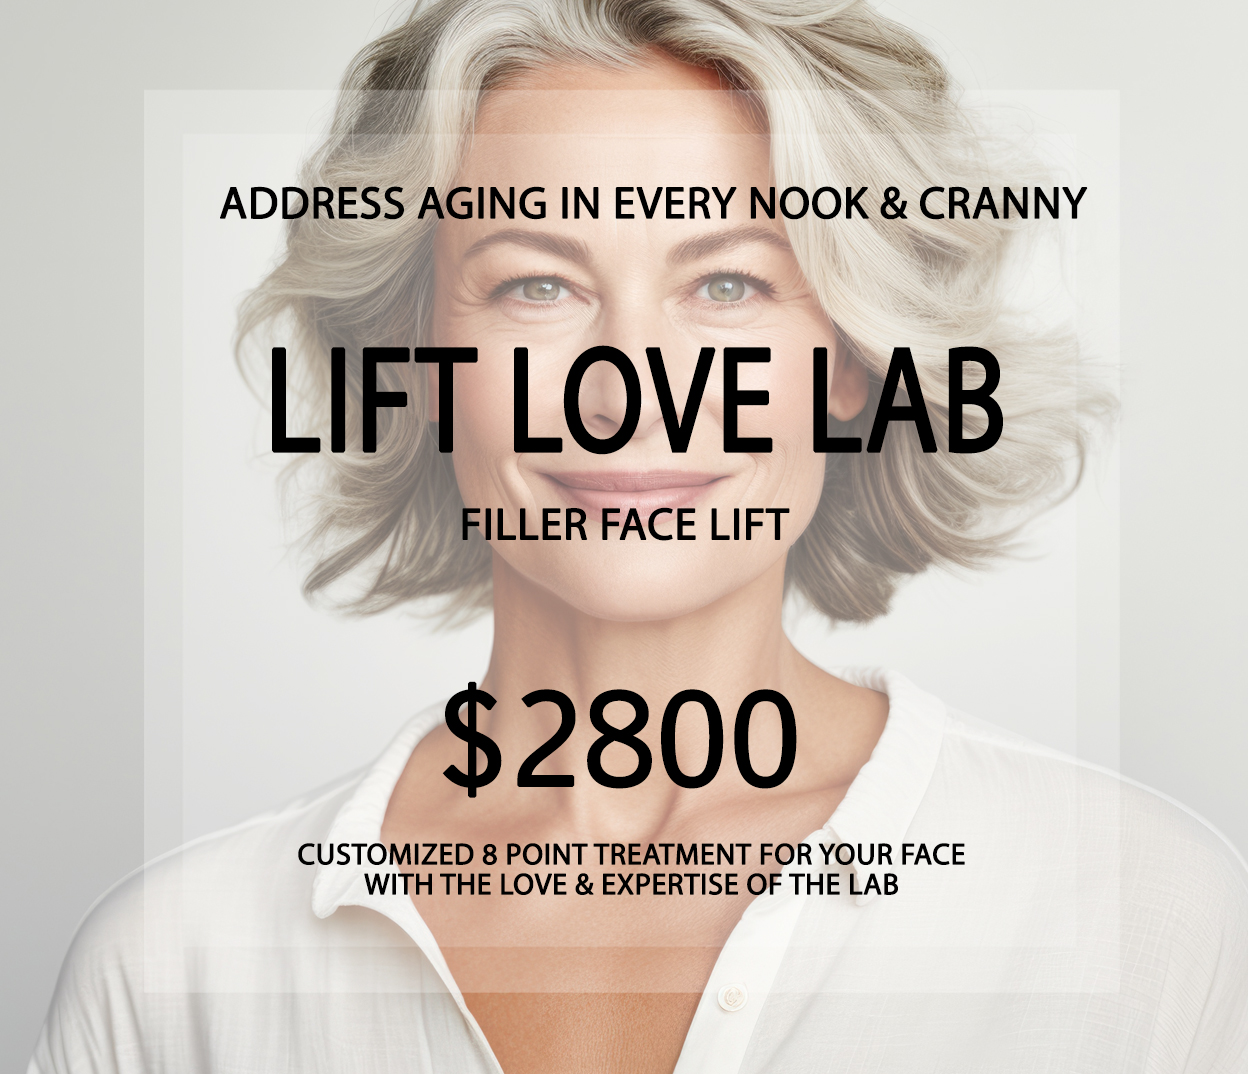 Lift Love Lab- Filler Facelift | Beauty Lab + Laser